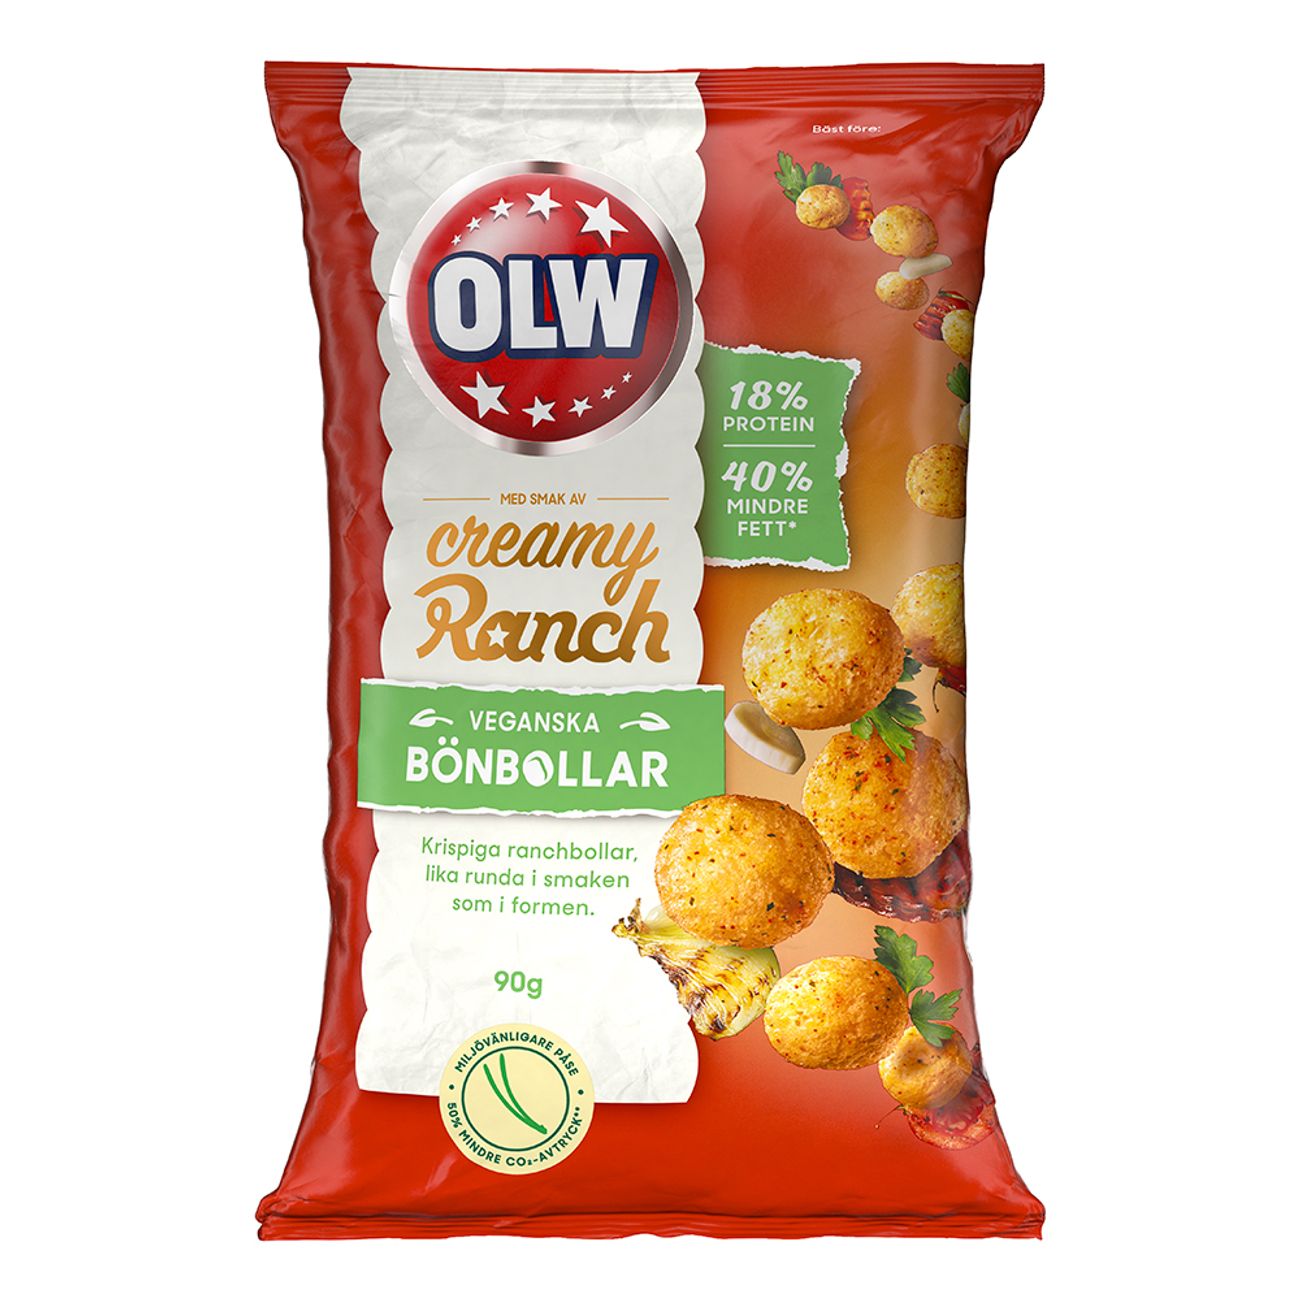 olw-bonbollar-ranch-58241-2